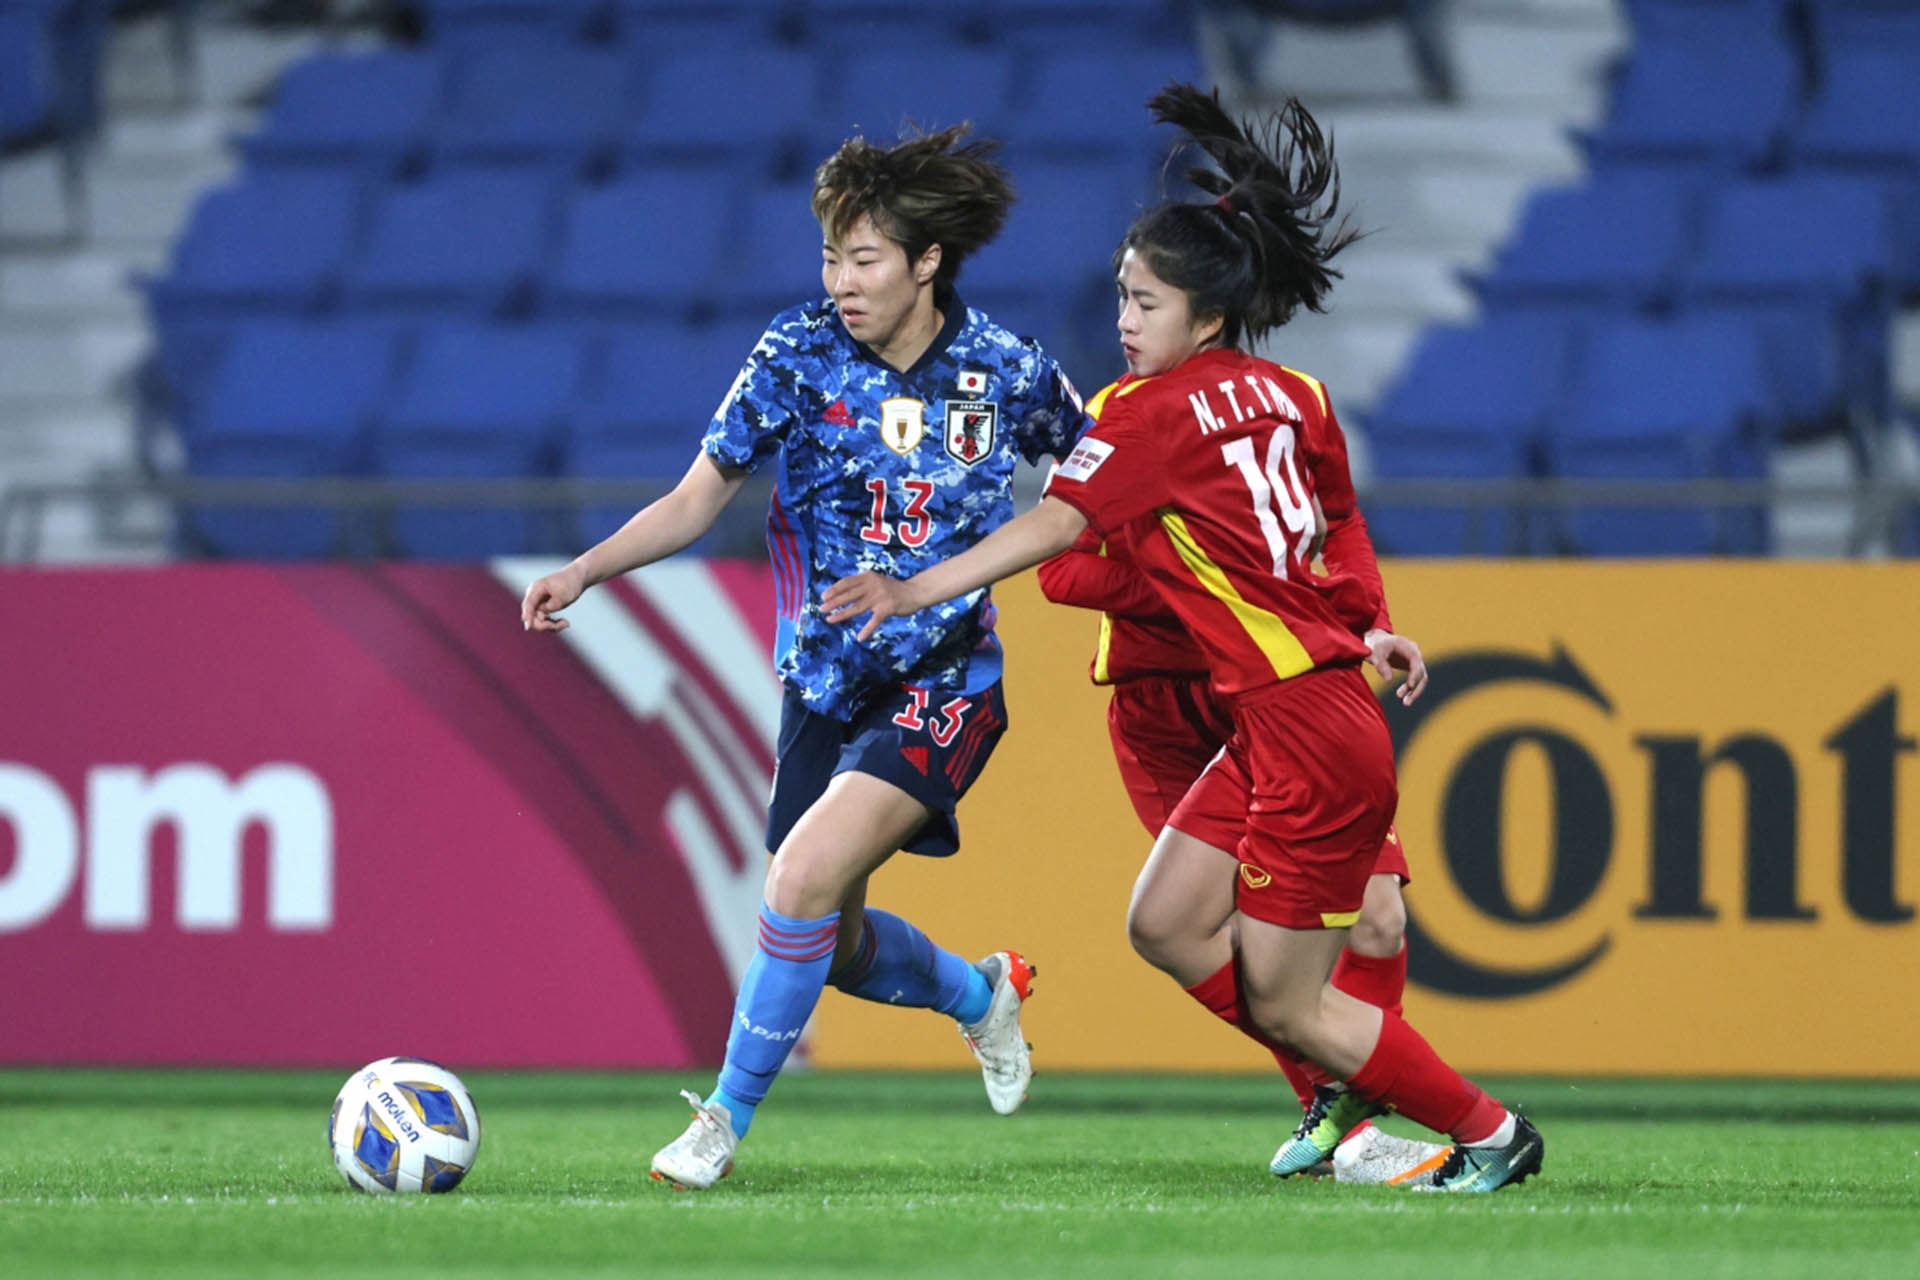 Đội tuyển nữ Việt Nam thua Nhật Bản 0-3